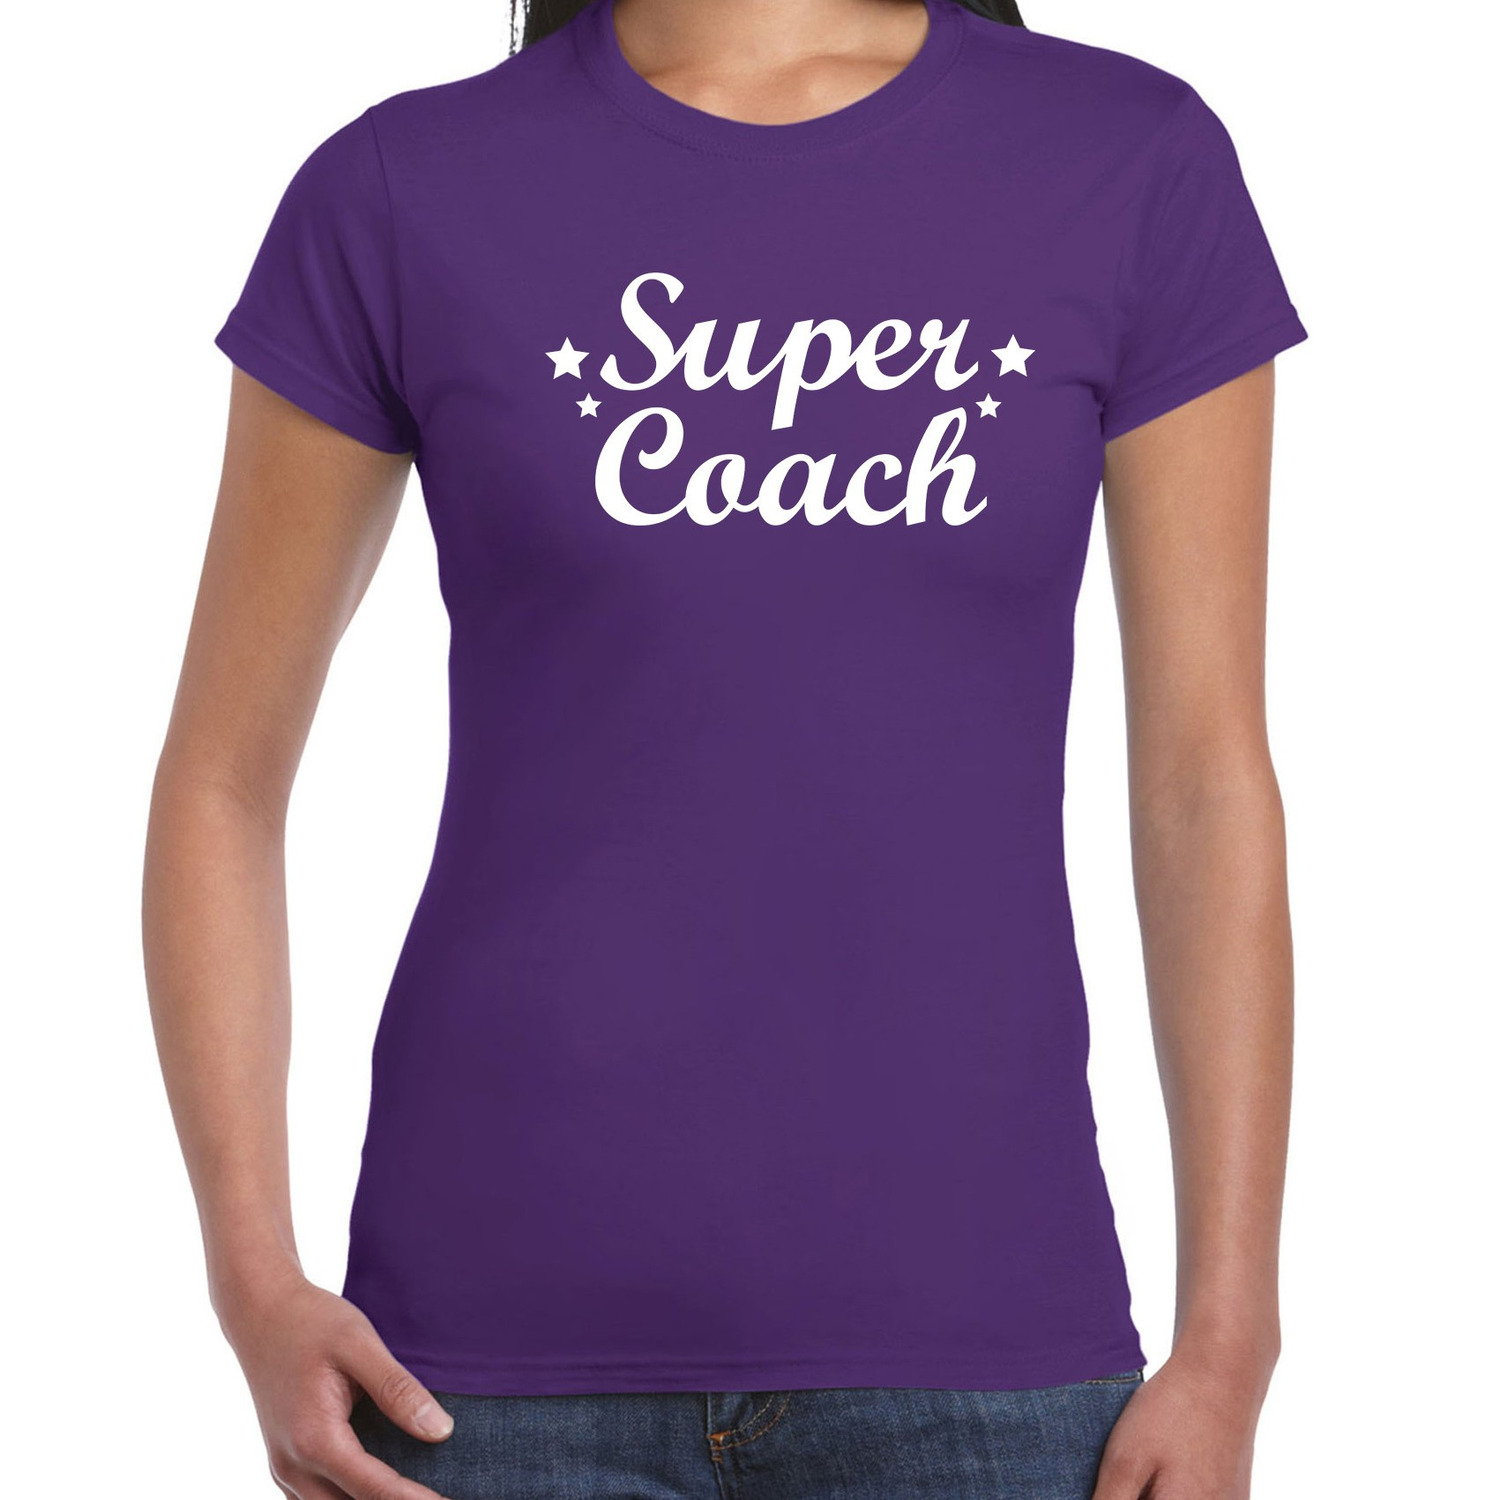 Super coach cadeau t shirt paars voor dames Bedankt cadeau voor een coach